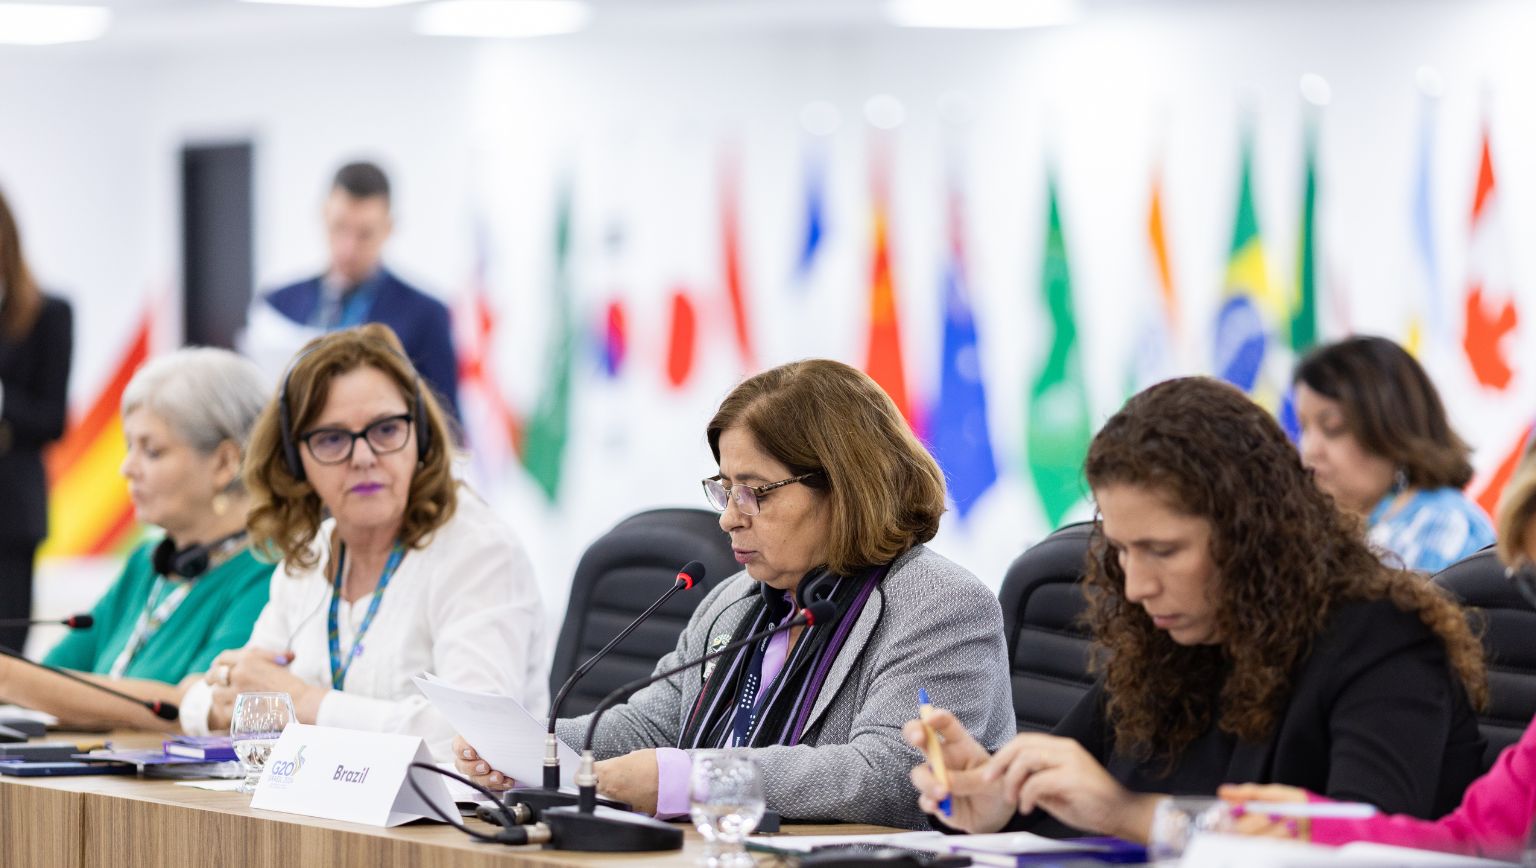 A declaração foi feita nesta segunda-feira (13), na sede do G20 Brasil, em Brasília, durante Abertura da 2ª Reunião Técnica do Grupo de Trabalho Empoderamento de Mulheres. O tema "Justiça climática" é dos prioritários nas discussões do GT.